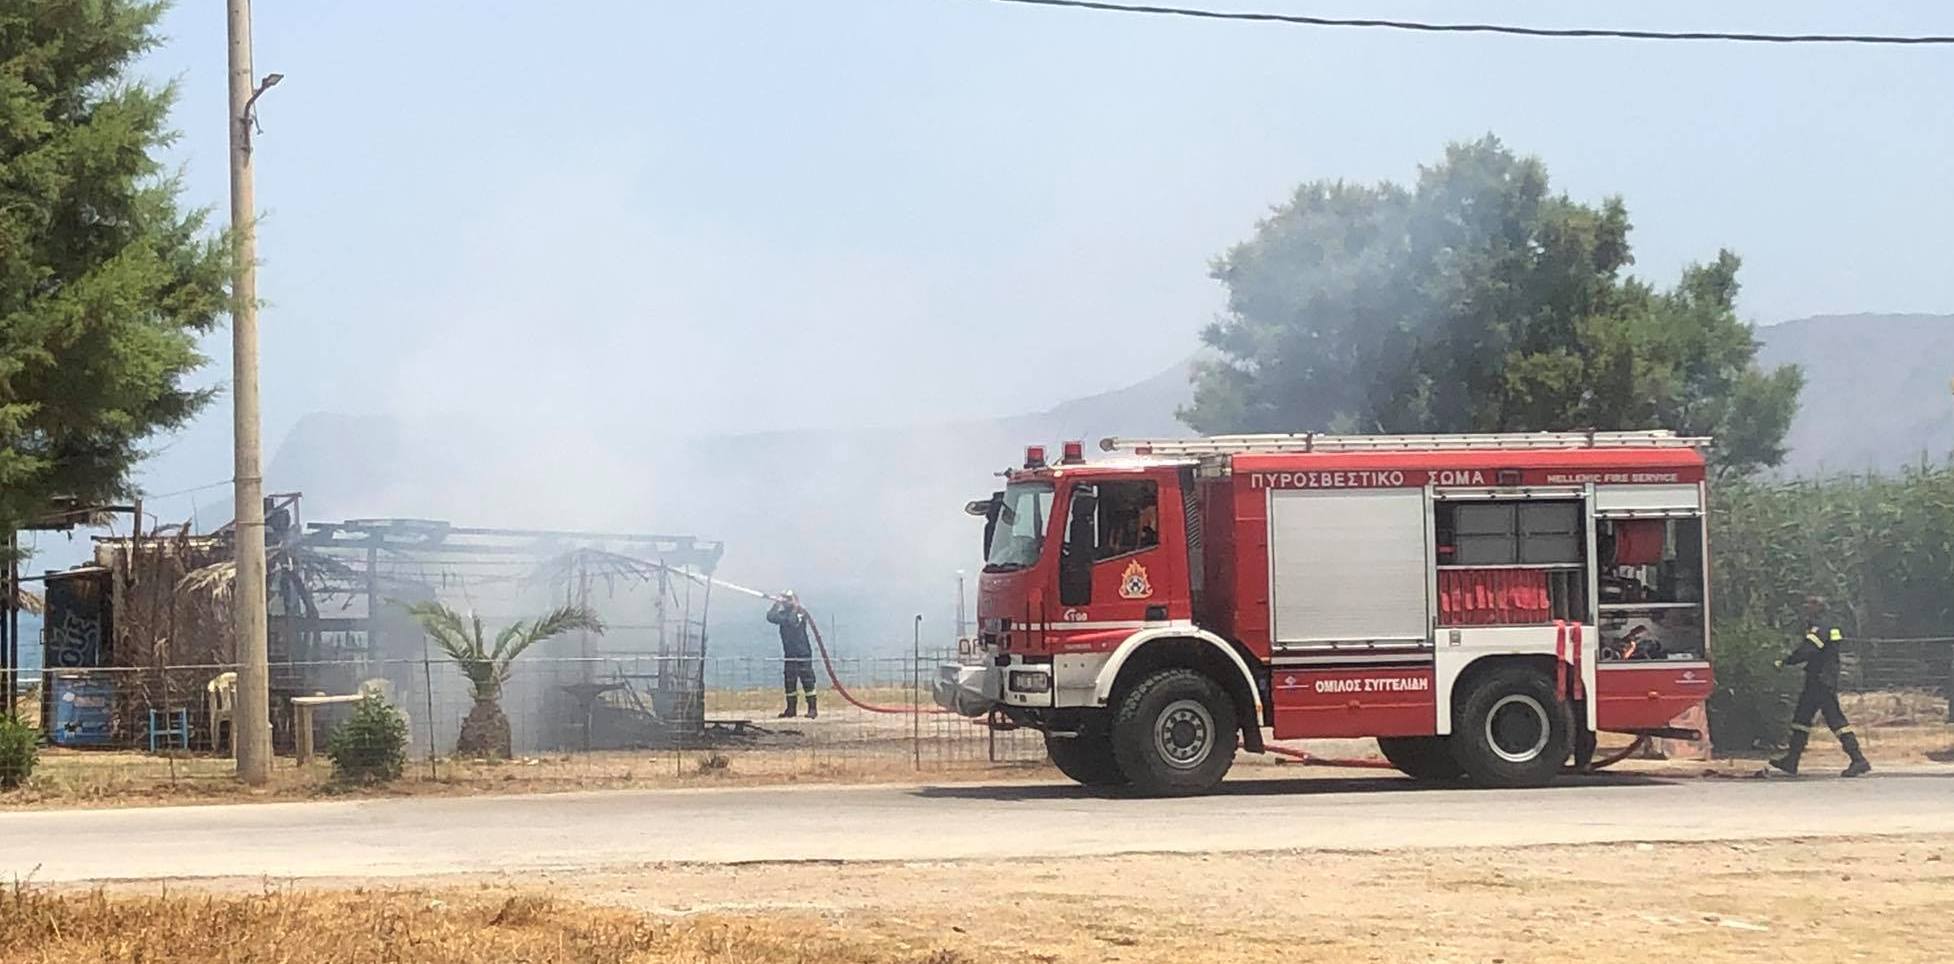 Χανιά: Φωτιά σε καντίνα στην Κίσαμο κινητοποίησε την πυροσβεστική (φωτο)